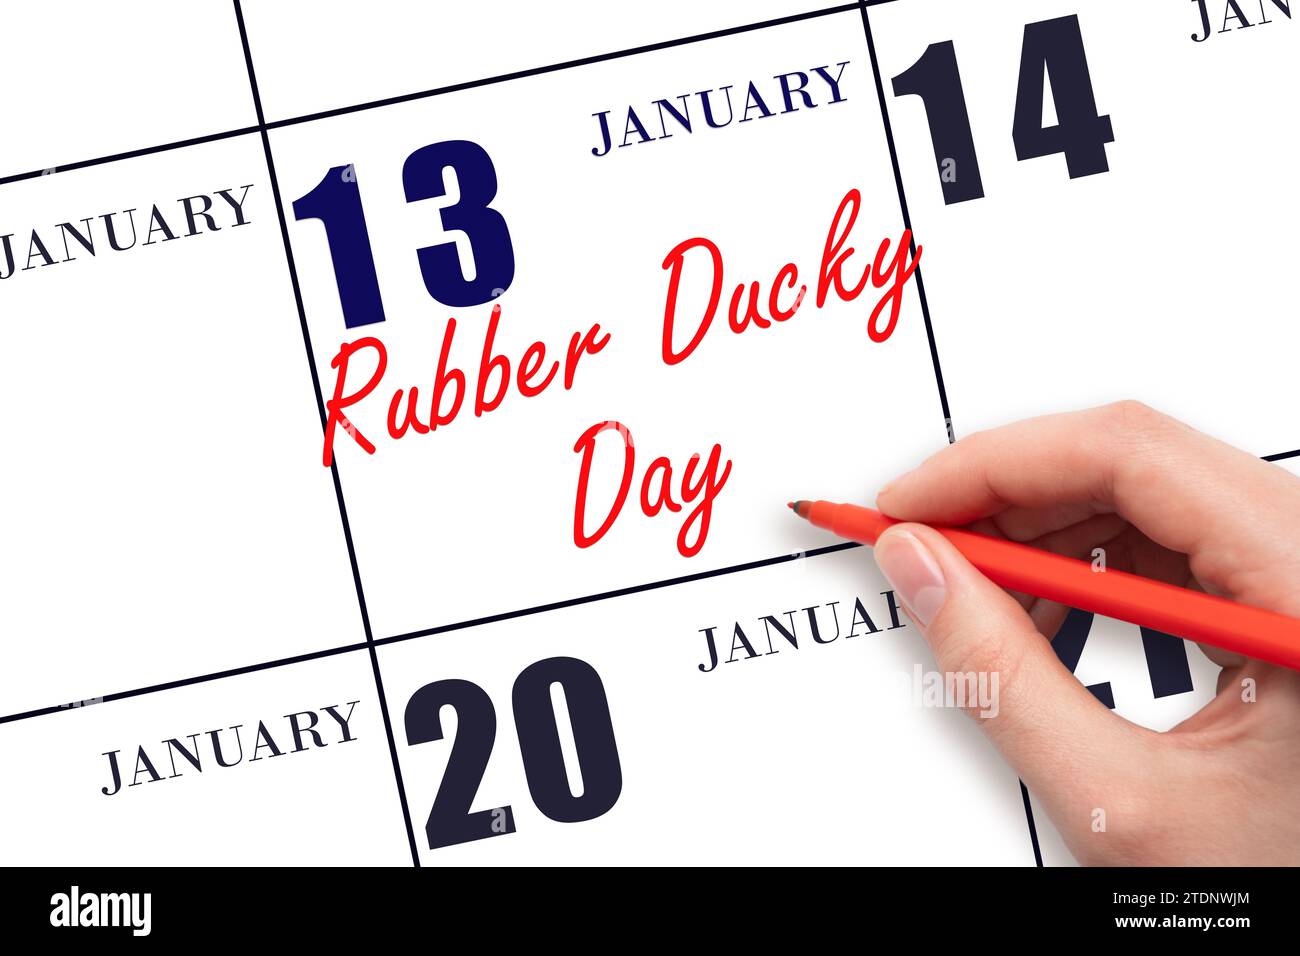 Januar: Handschrift Rubber Ducky Day am Kalenderdatum. Speichern Sie das Datum. Urlaub. Tag des Jahres-Konzept. Stockfoto